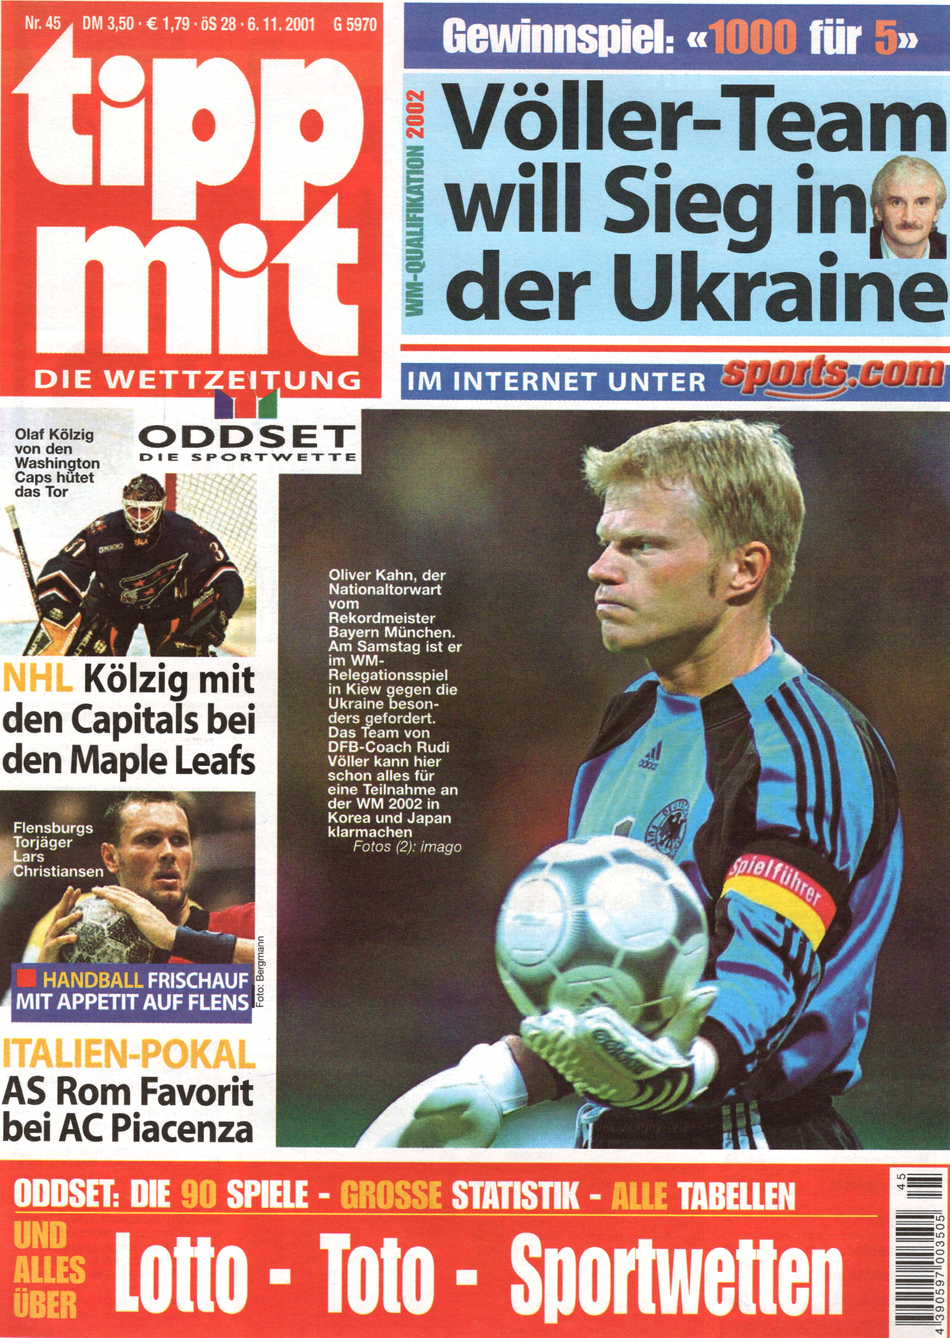 Titelbild der "tipp mit"-Ausgabe 45/2001 zum WM-Qualifikationsspiel gegen die Ukraine mit Spielführer Oliver Kahn